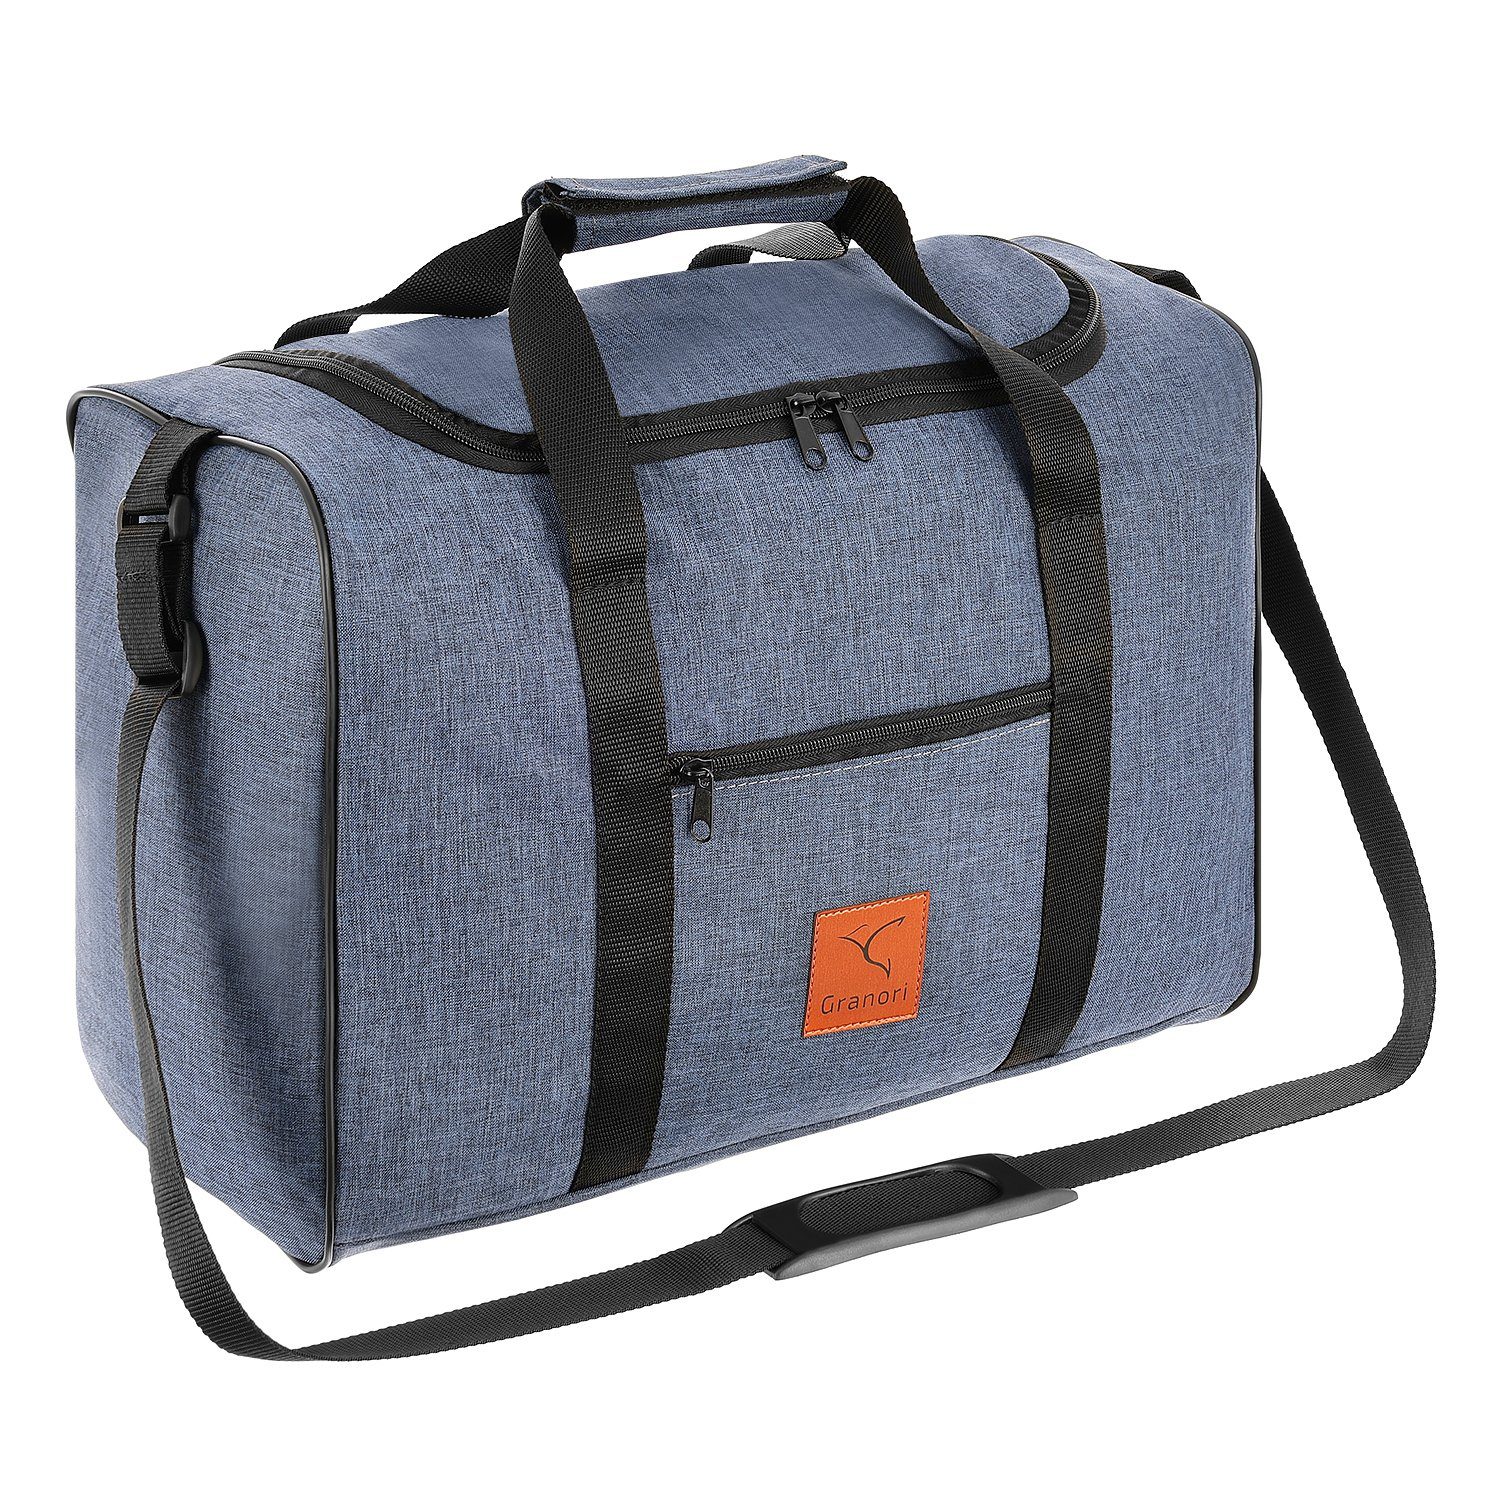 Granori Reisetasche 40x30x20 cm Handgepäck für Flüge mit z. B. Wizz Air (Modell WT2), extra leicht, mit abschließbarem Fach und verstellbarem Schultergurt Blau